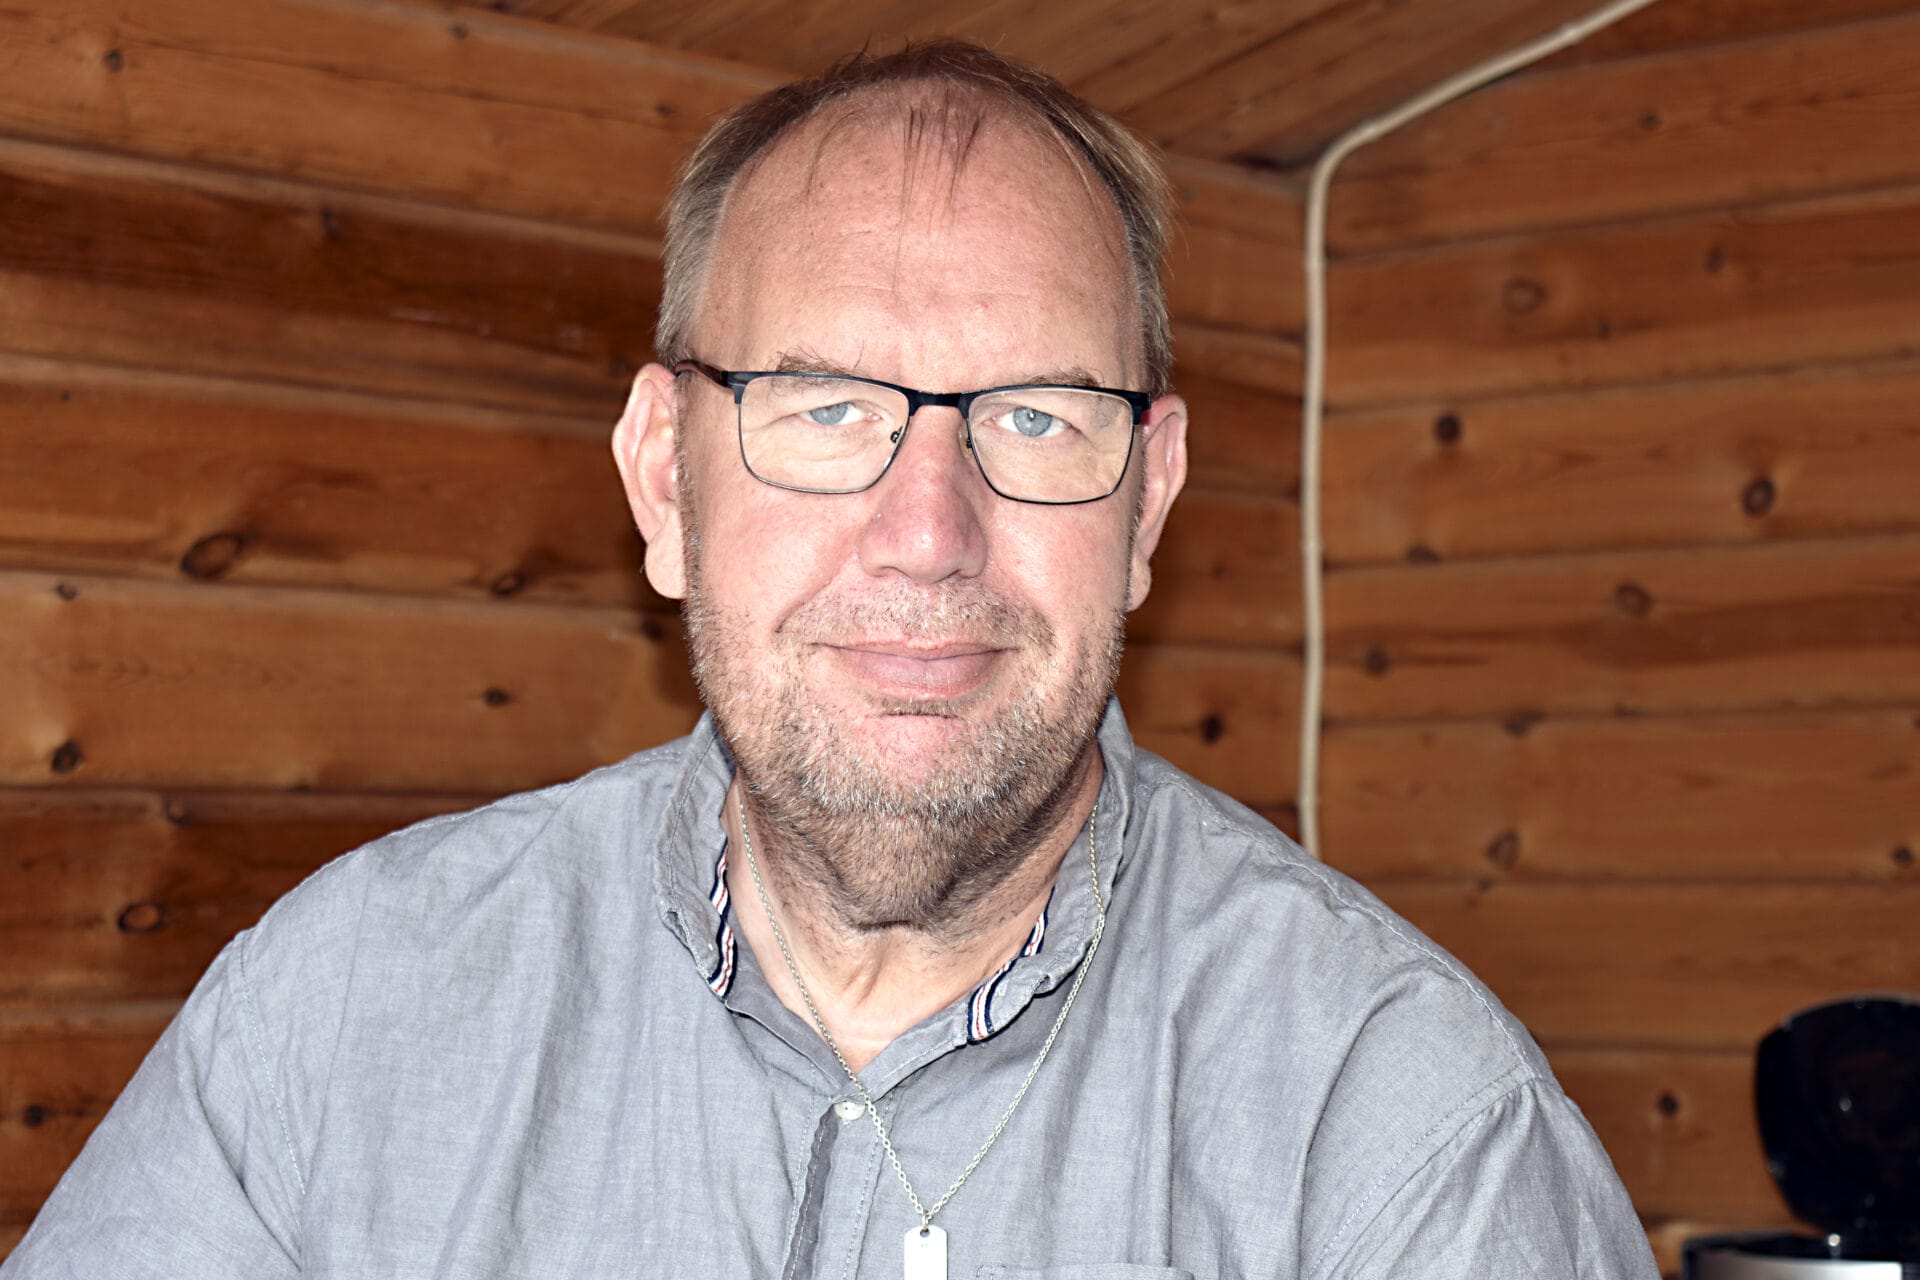 Lars-Göran "Larsa" Hallström